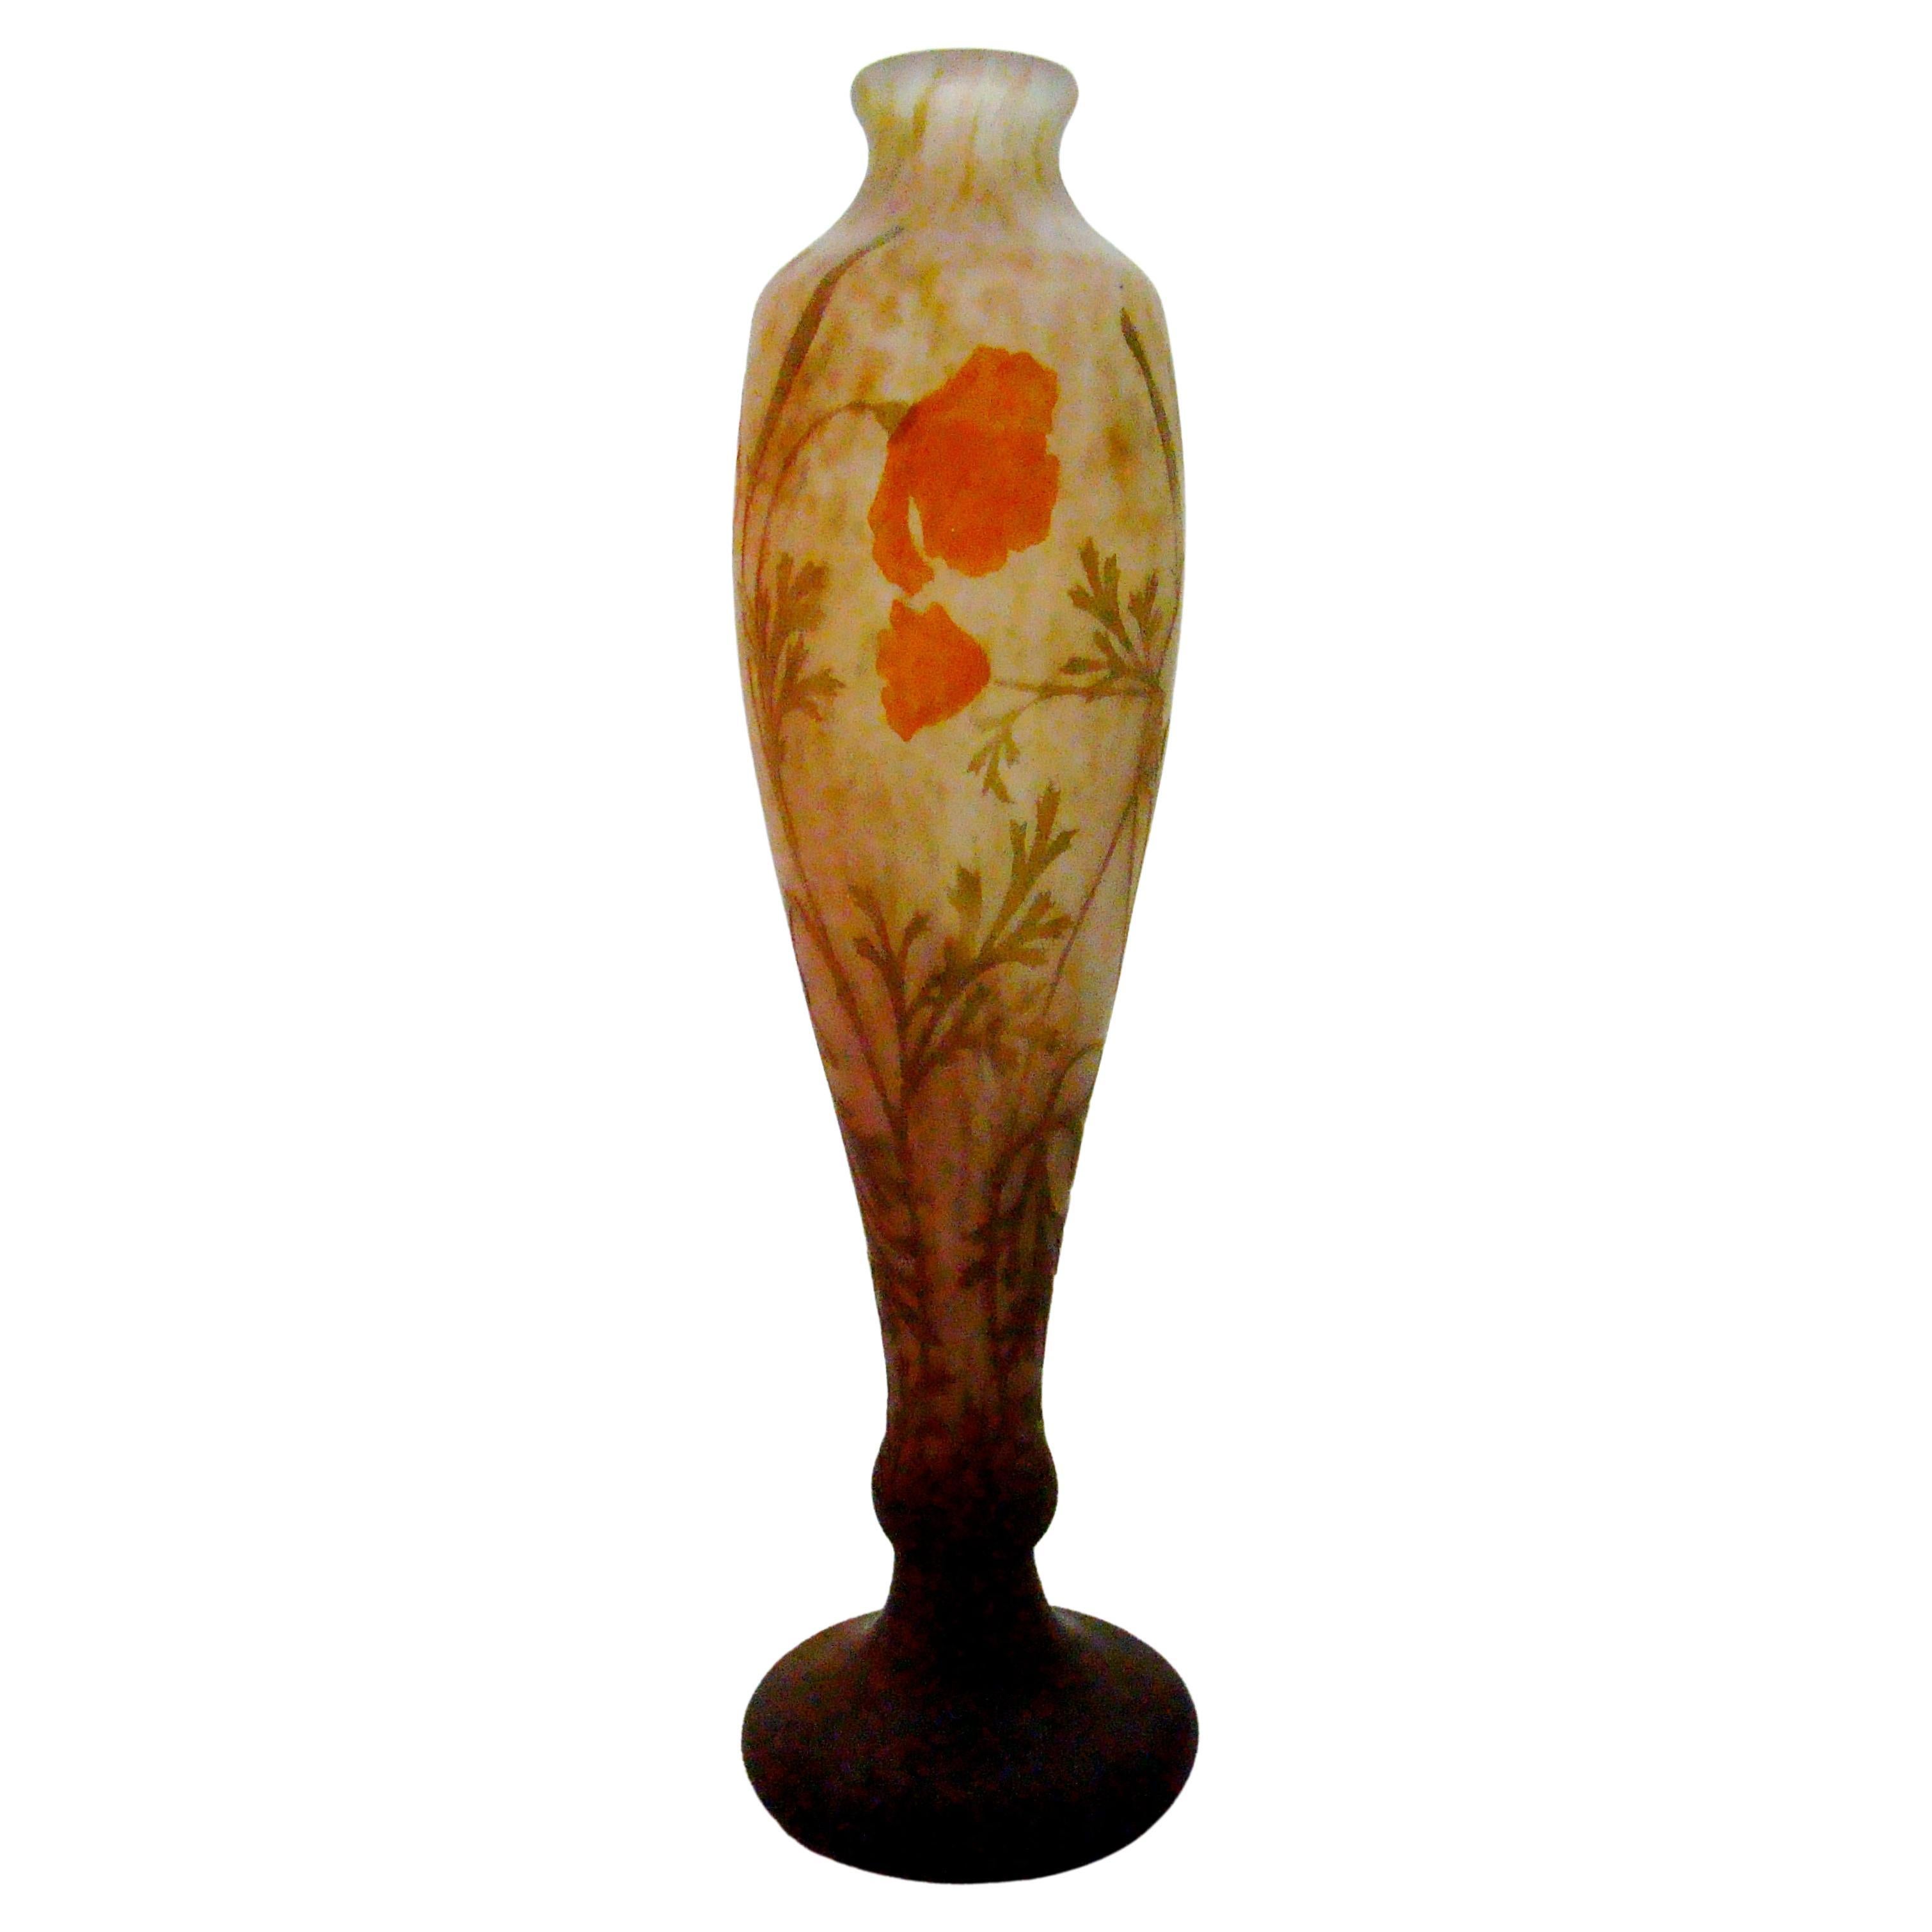 Vase, Sign: Daum Nancy, France, Style: Jugendstil, Art Nouveau, Liberty, 1904